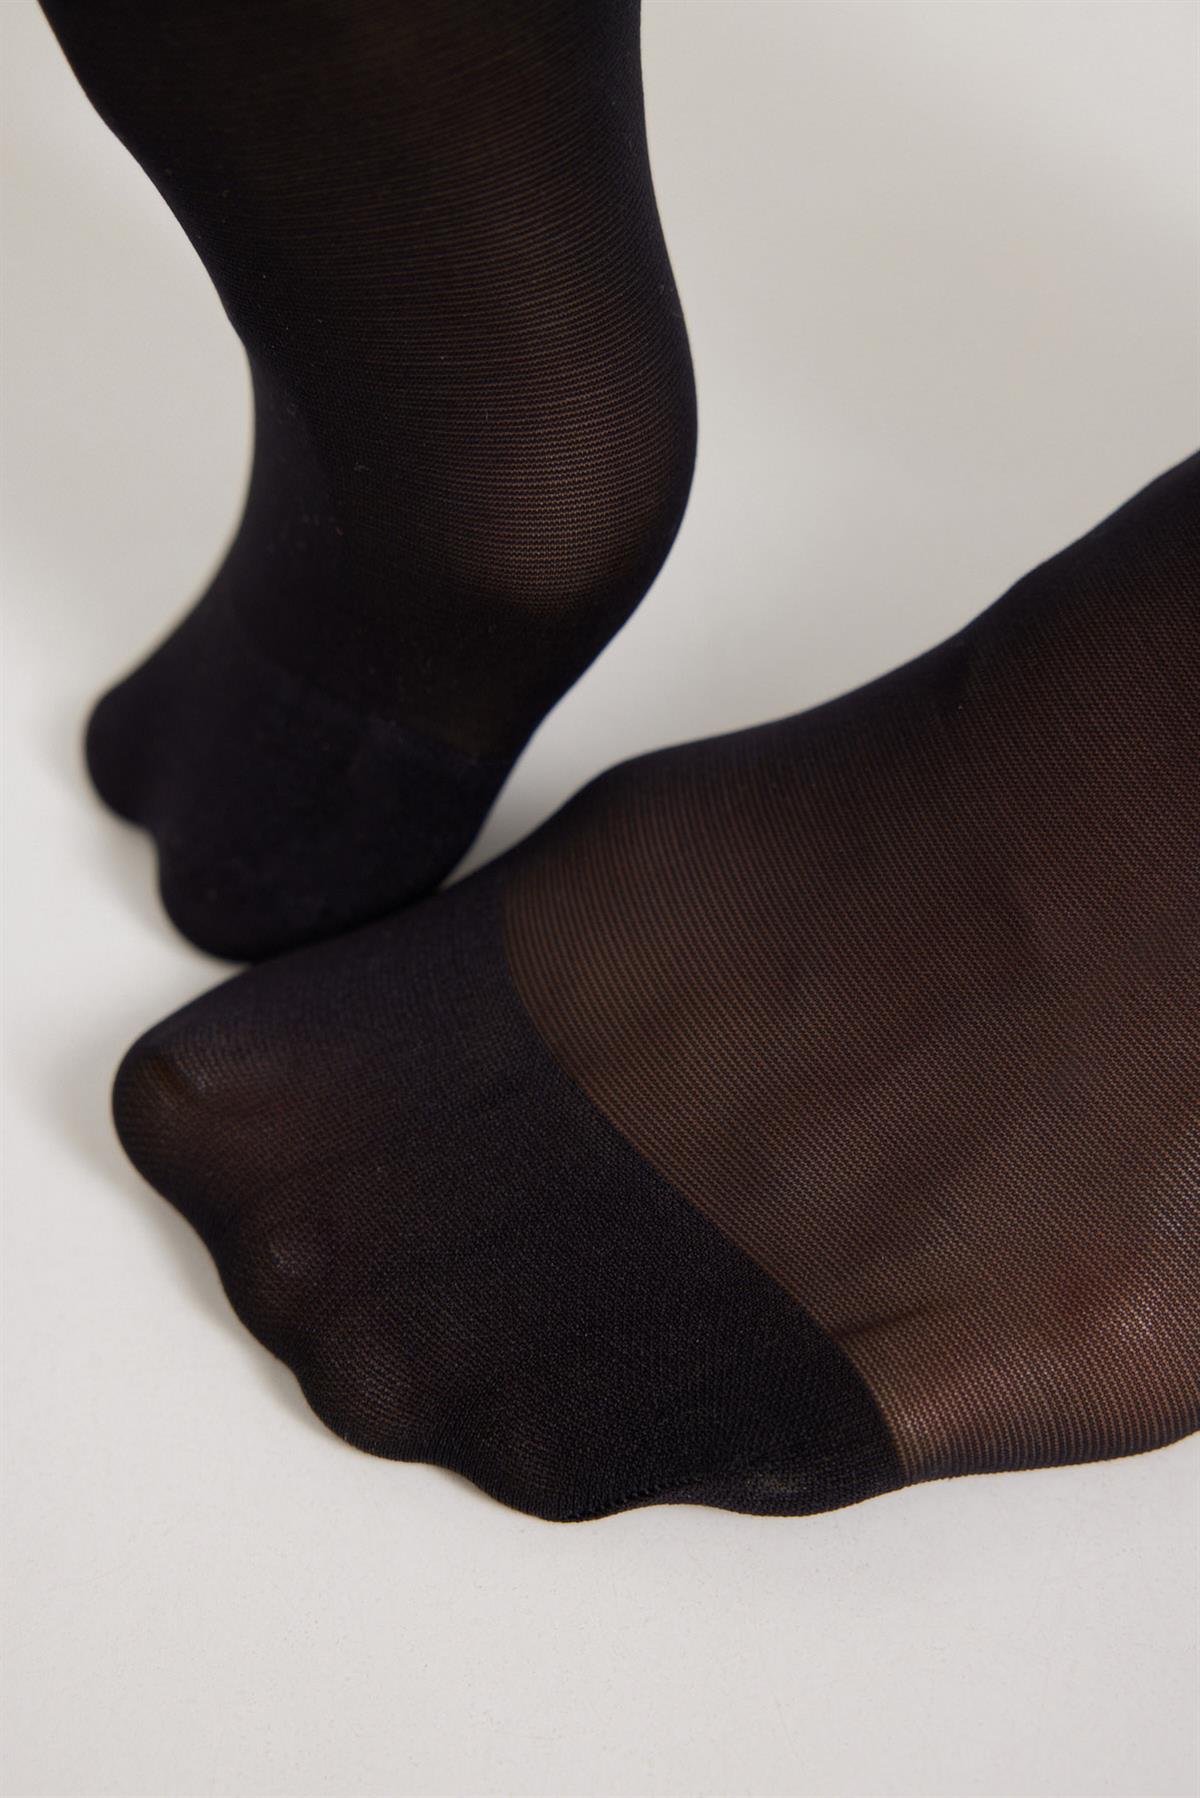 Shaper Korseli Kadın Külotlu Çorap SİYAH